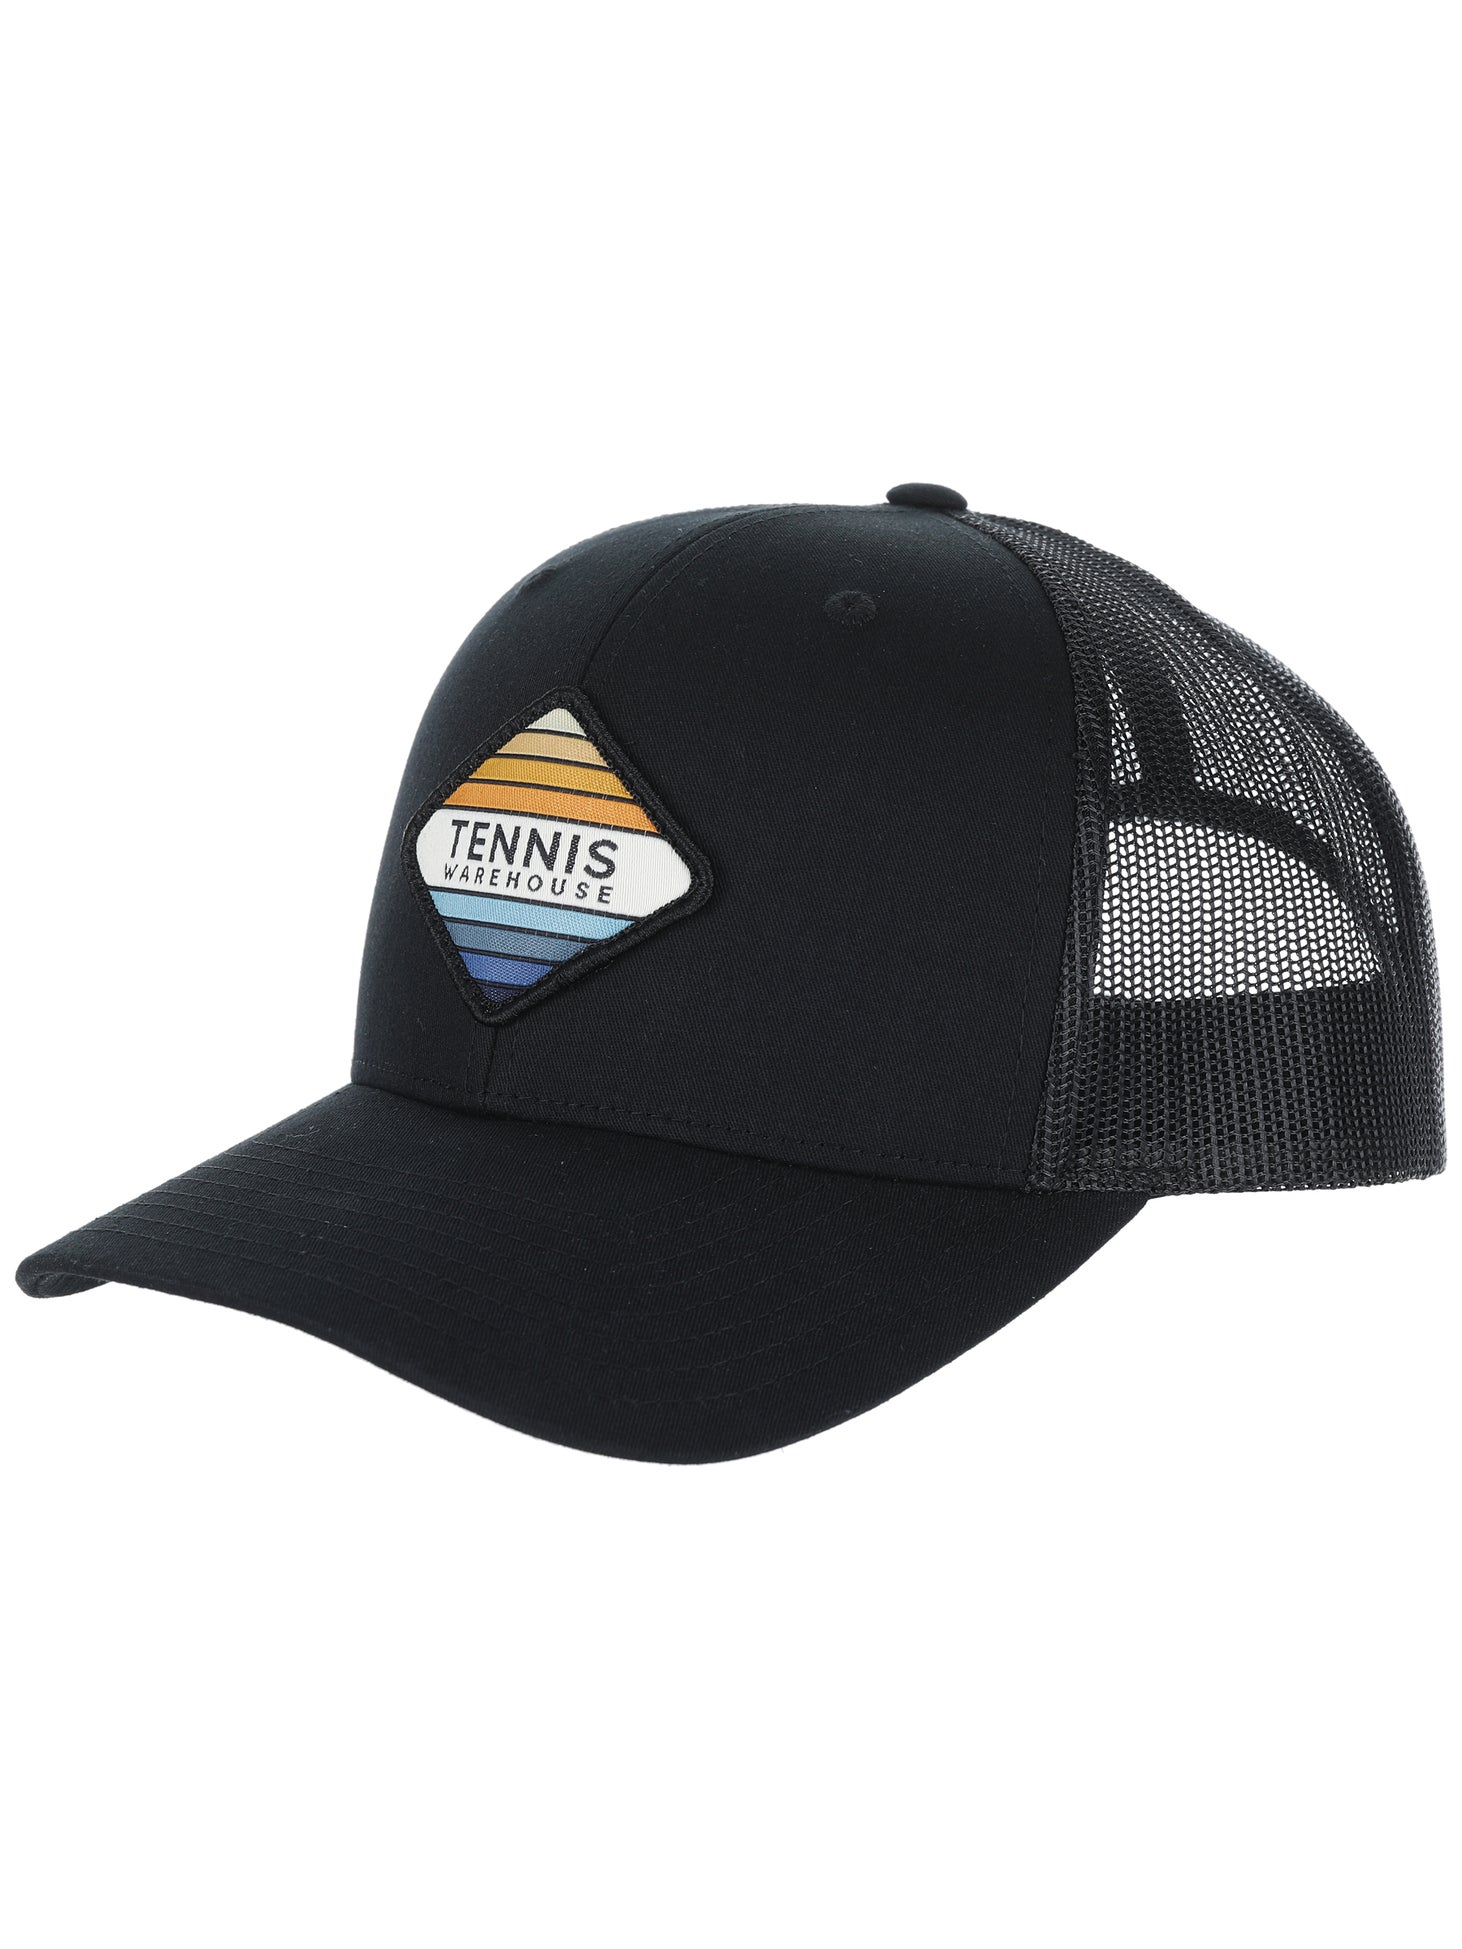 Tennis Warehouse Diamond Trucker Hat | Tennis Warehouse